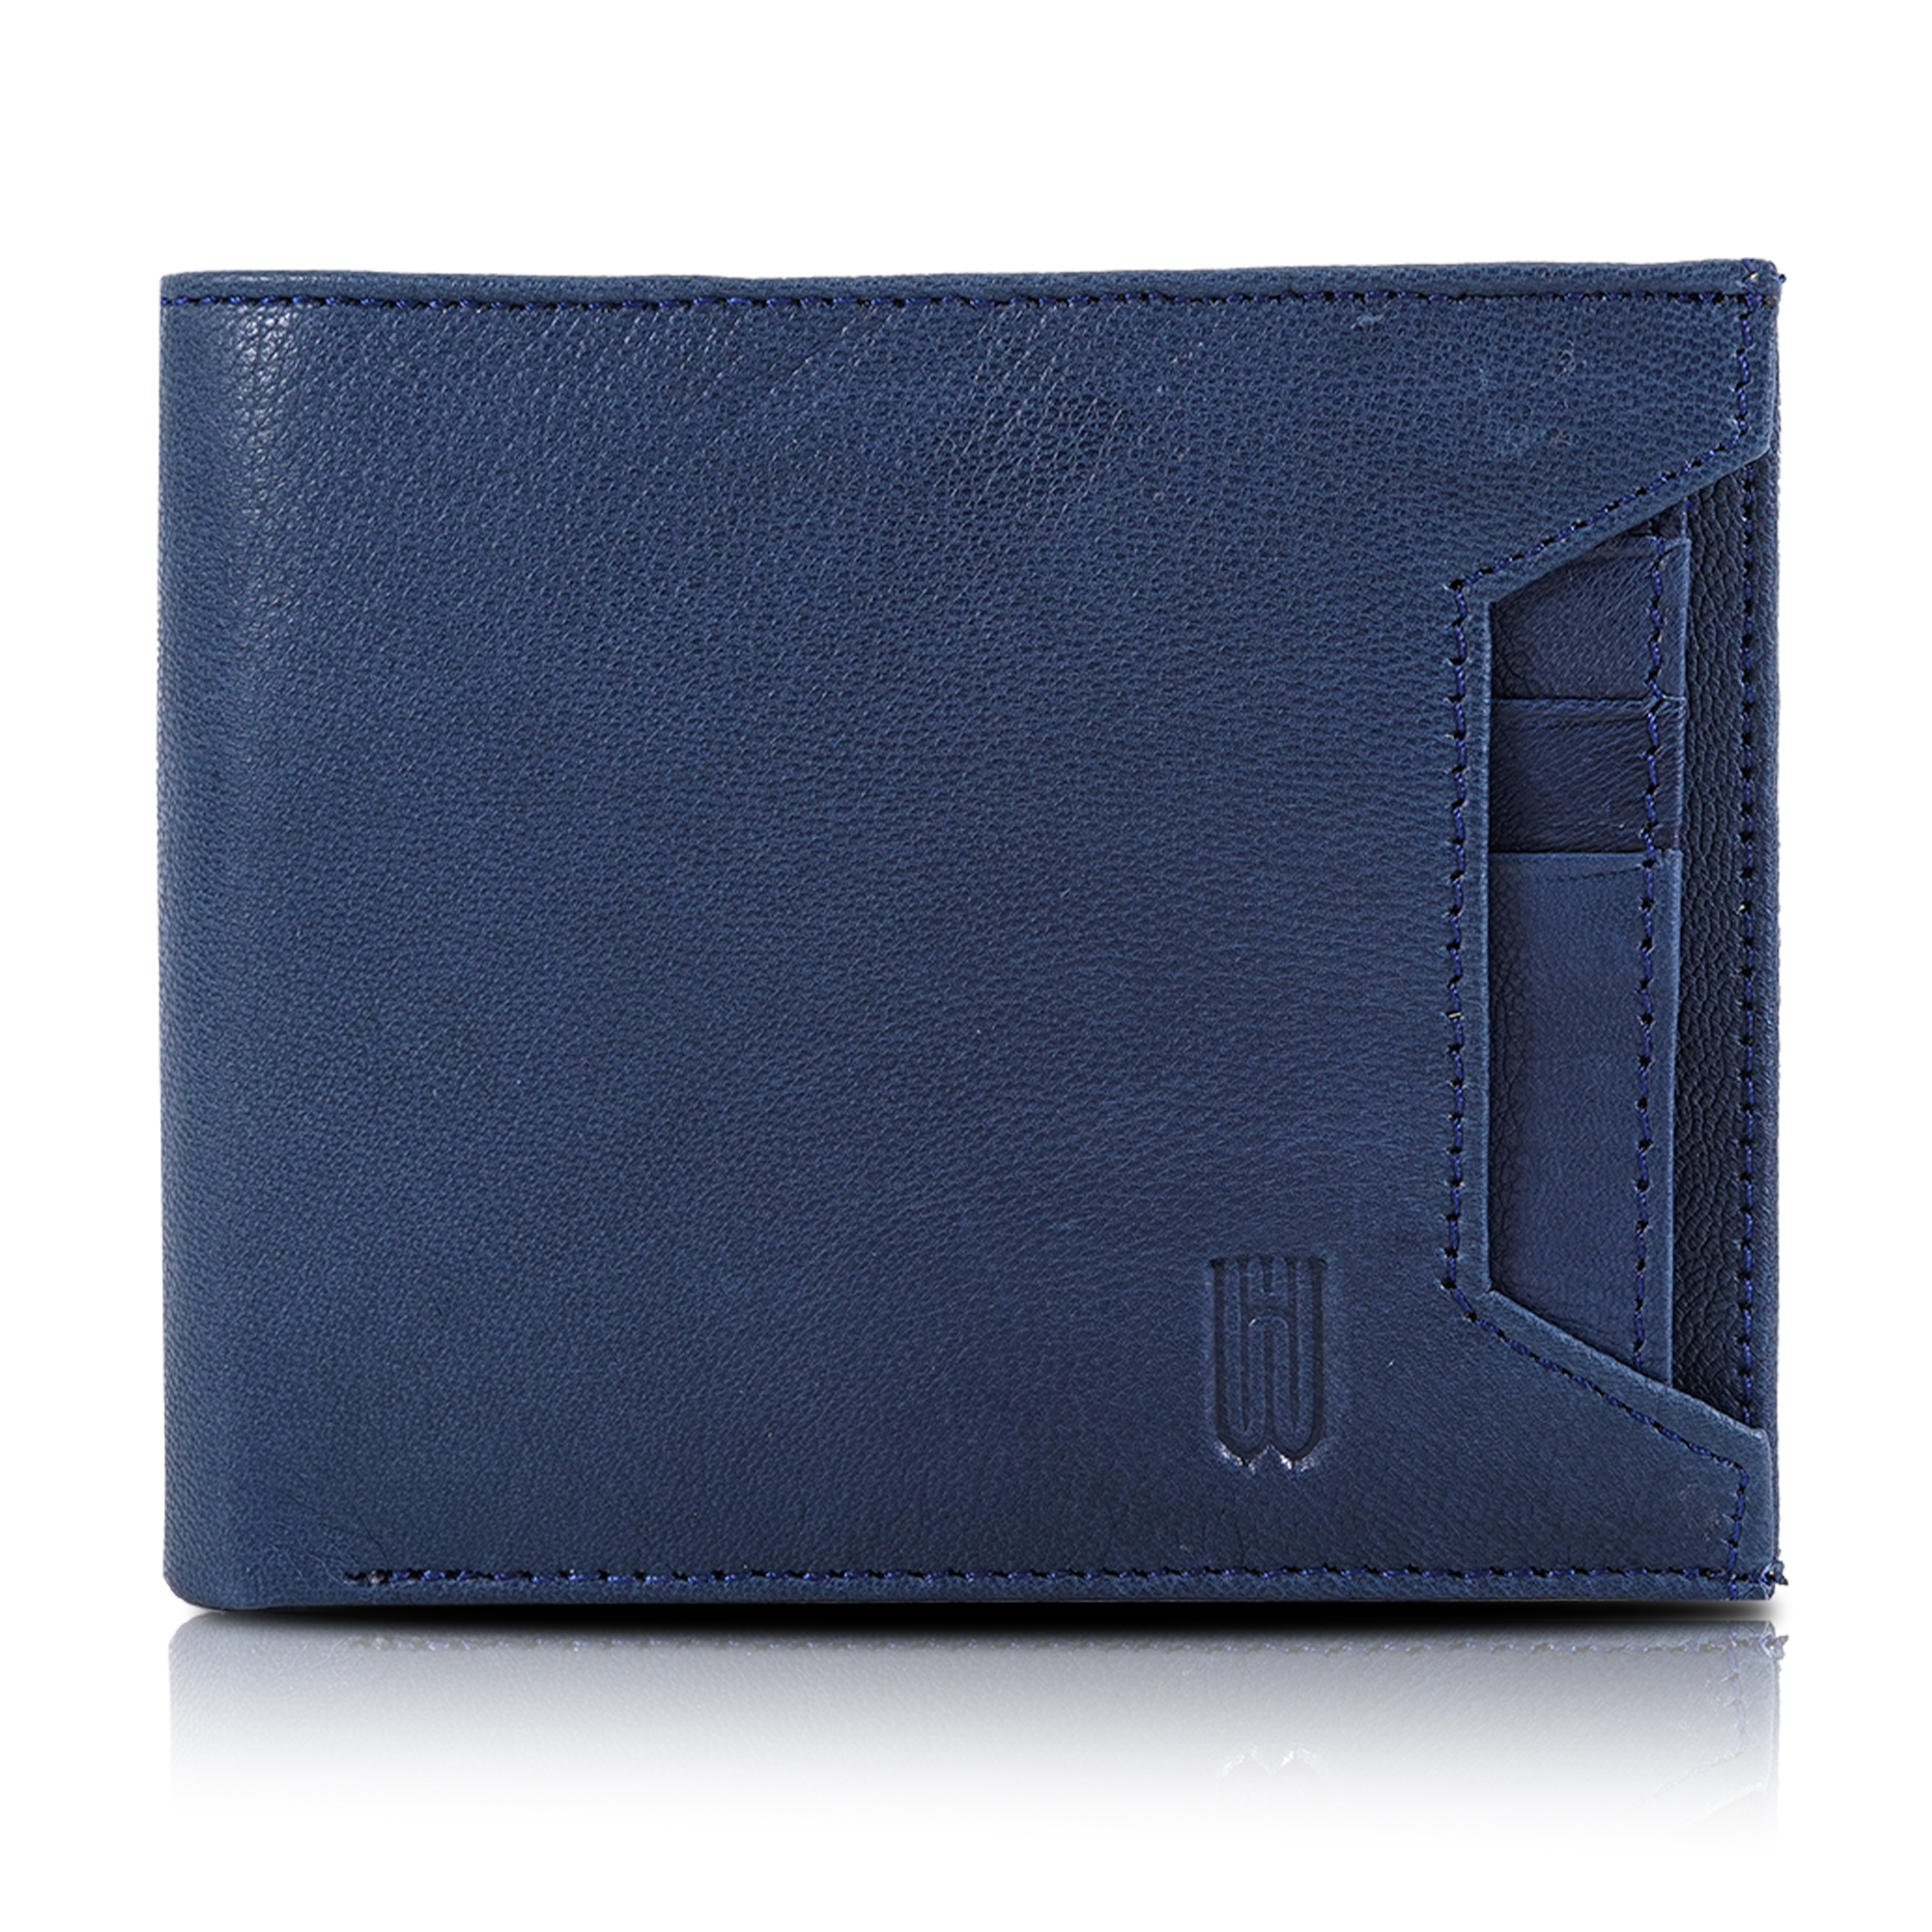 Leather Belt Wallet Combo For Men Blue-asset-678